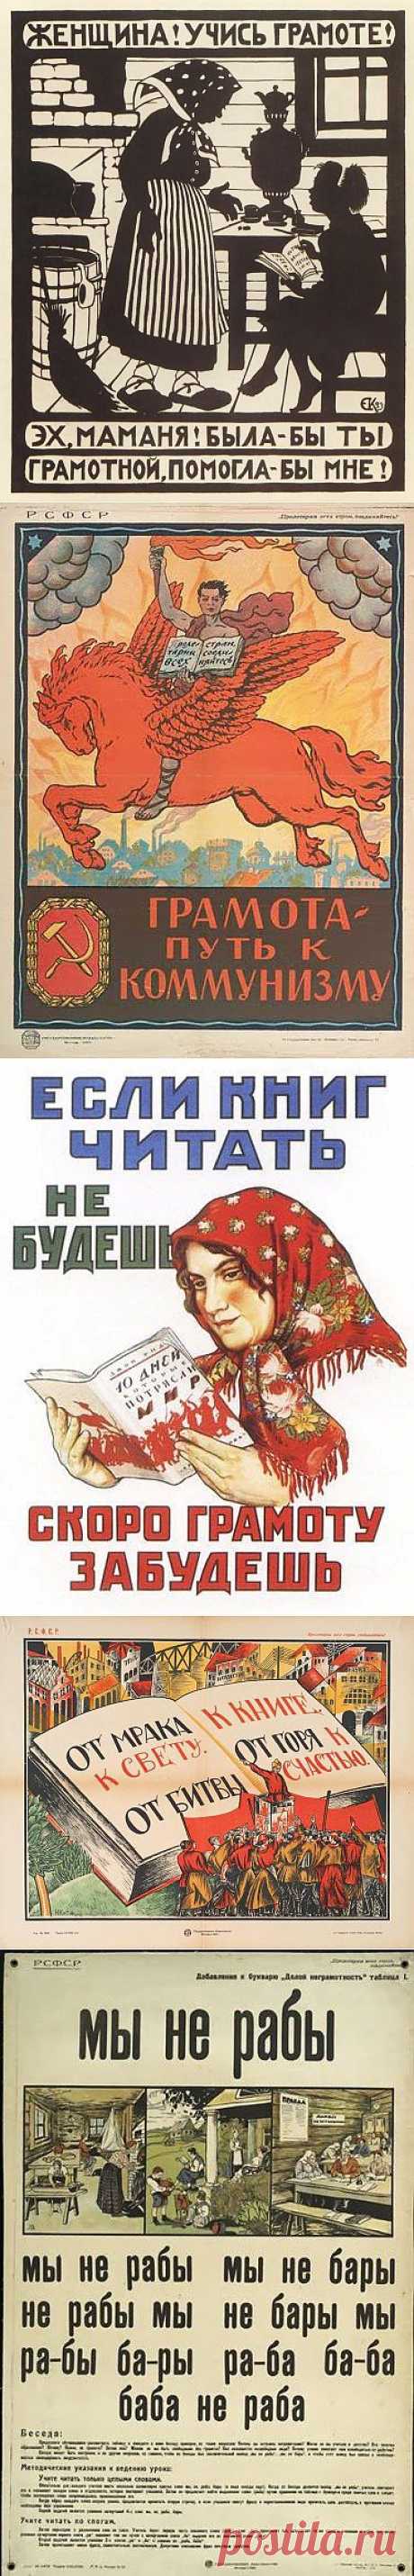 Пропаганда чтения в плакатах 20-х годов / Назад в СССР